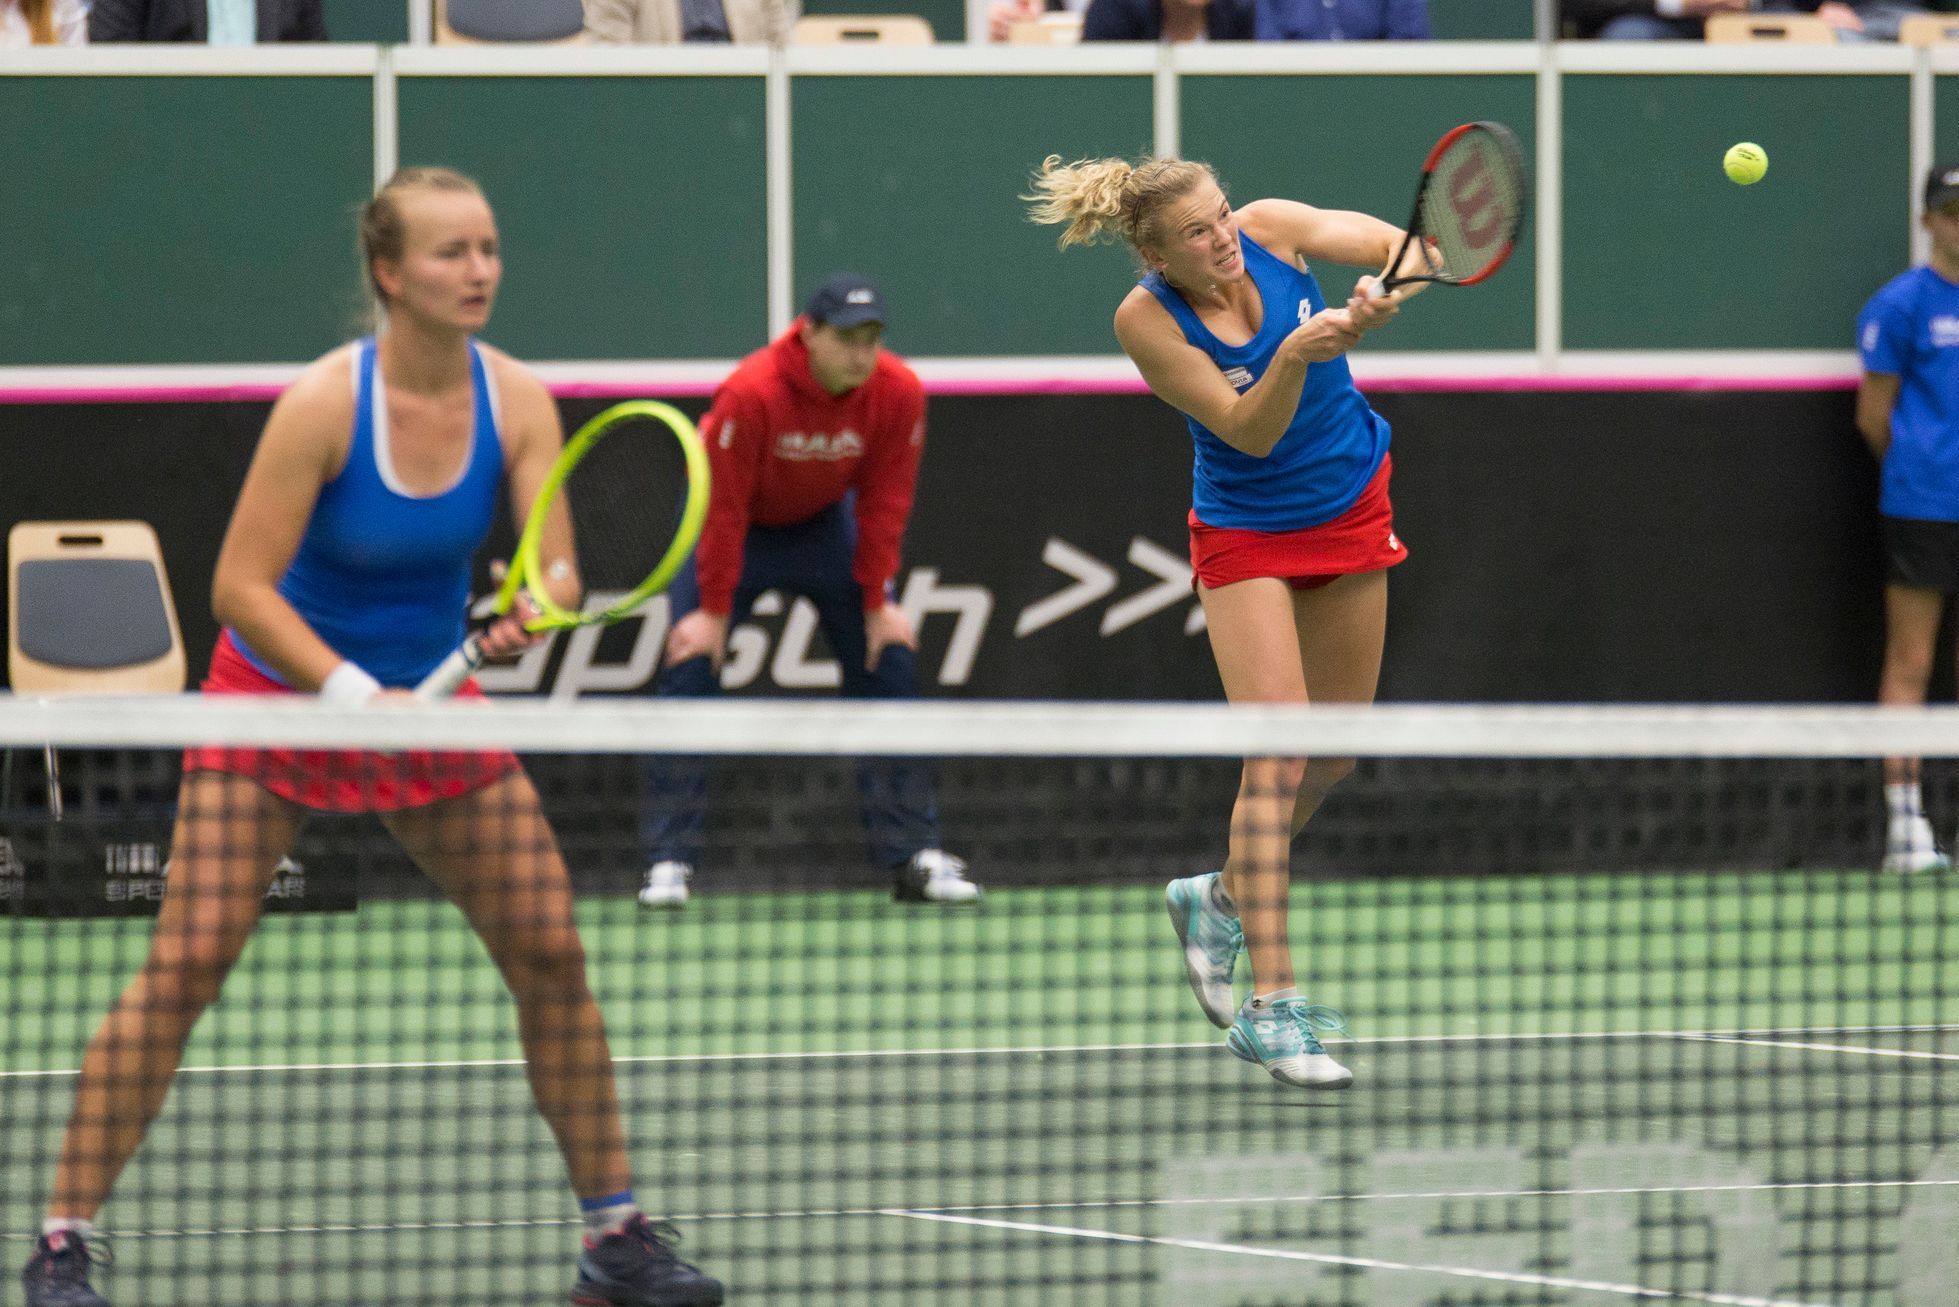 Krejčíková, Siniaková vs. Niculescuová/Beguová, Fed Cup, Česko vs. Rumunsko